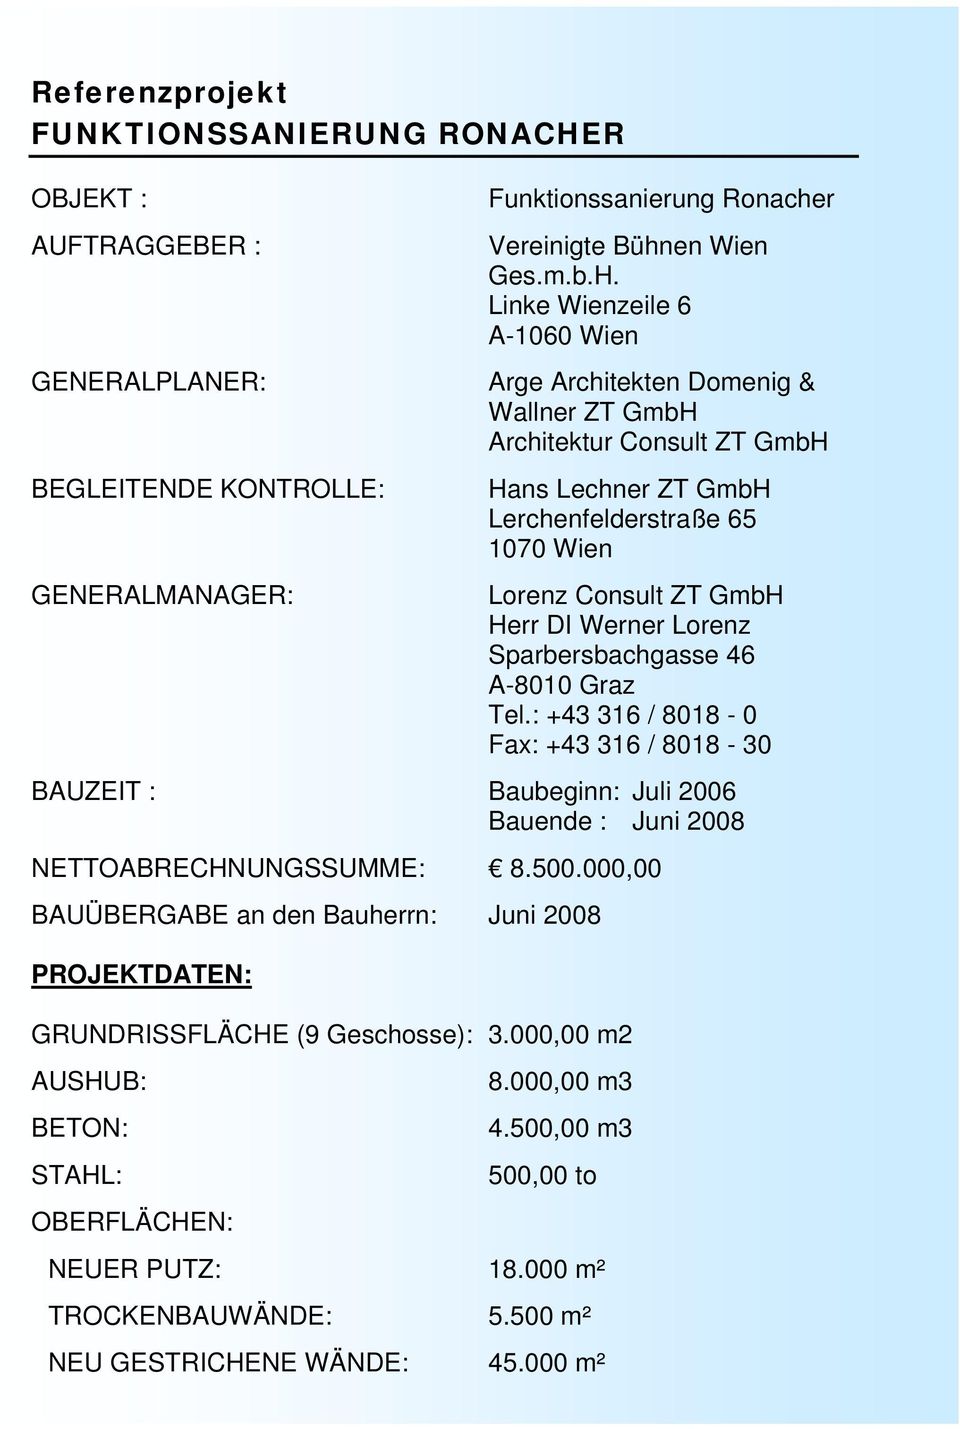 Linke Wienzeile 6 A-1060 Wien Arge Architekten Domenig & Wallner ZT GmbH Architektur Consult ZT GmbH Hans Lechner ZT GmbH Lerchenfelderstraße 65 1070 Wien Lorenz Consult ZT GmbH Herr DI Werner